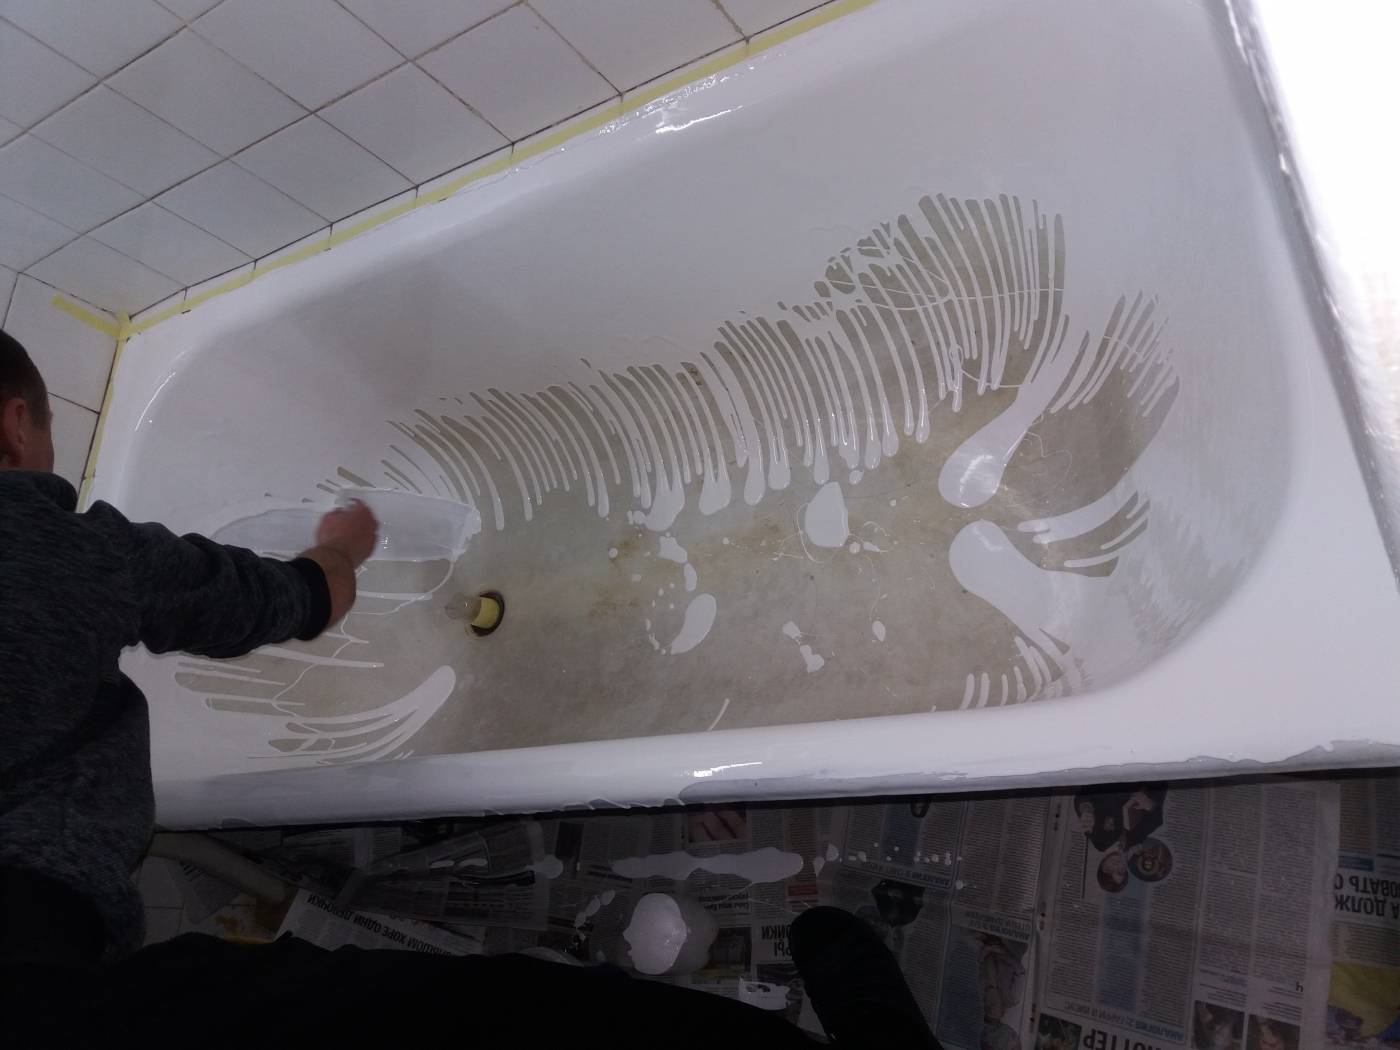 Эмалировка чугунной ванны своими руками: как правильно отреставрировать чугунную ванну